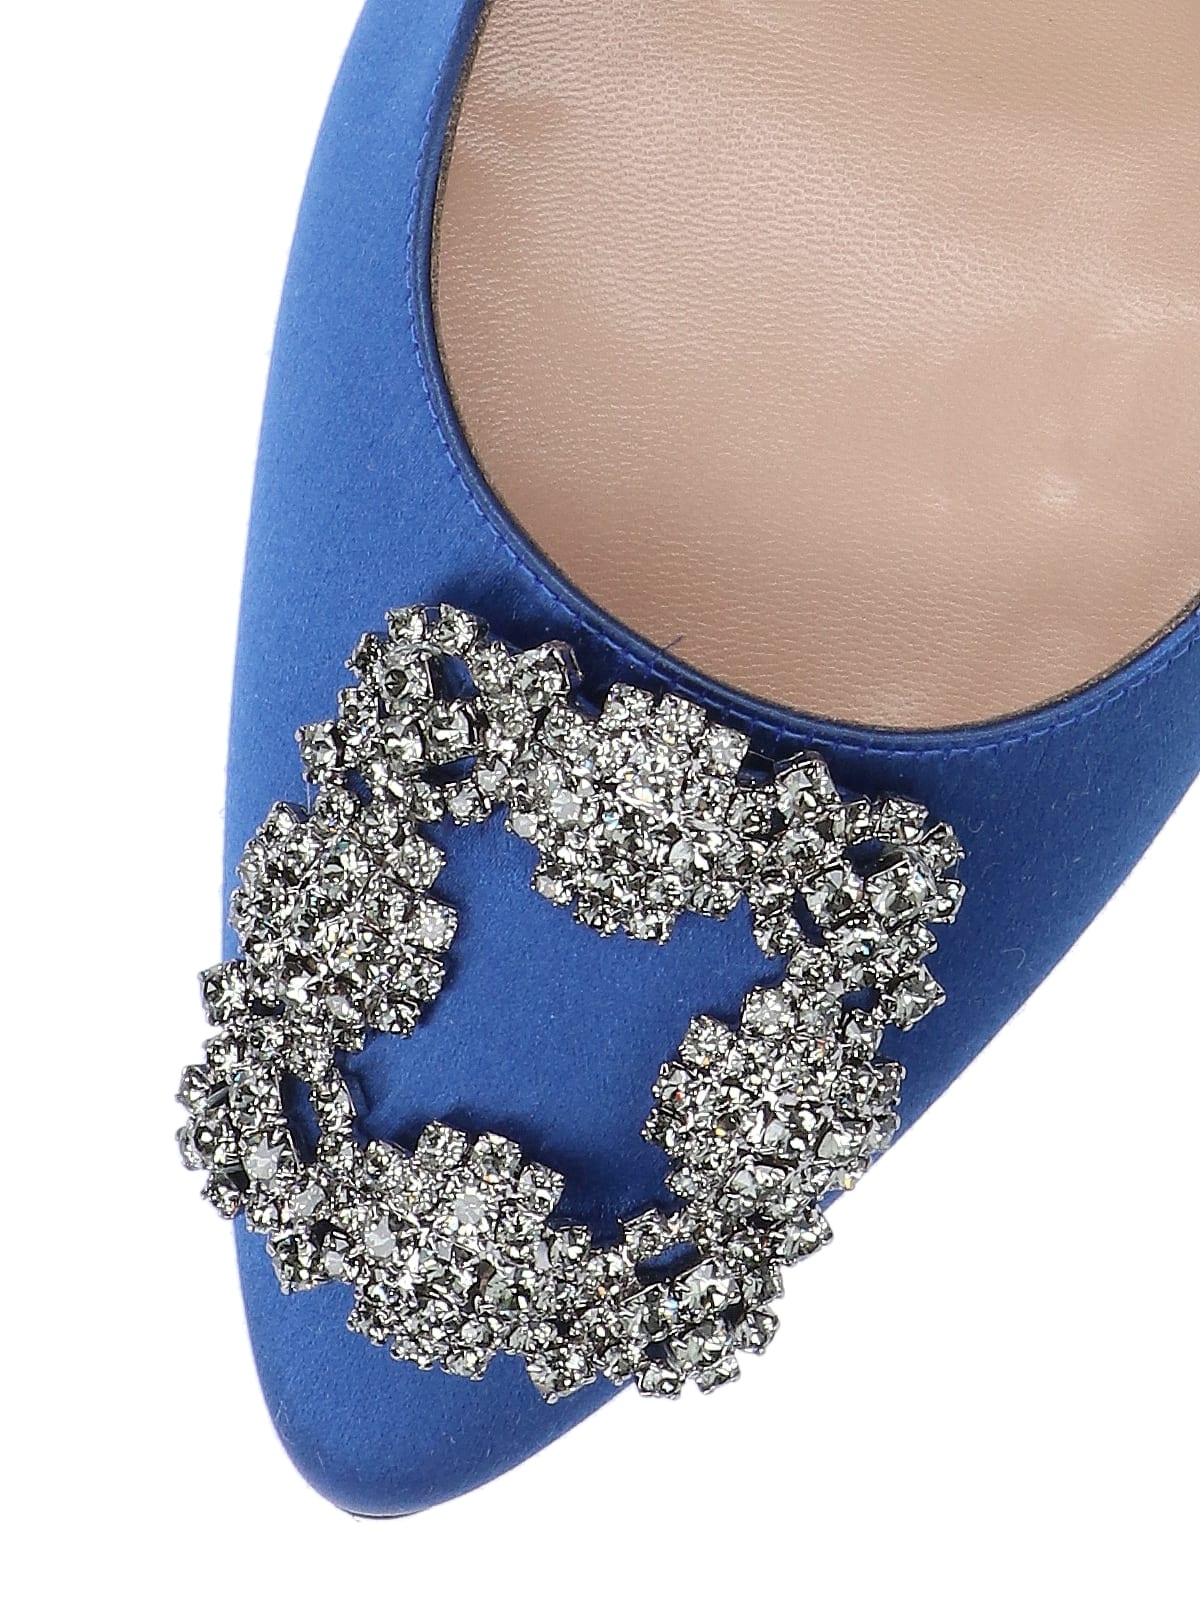 Shop Manolo Blahnik High-heeled Shoe In Blue